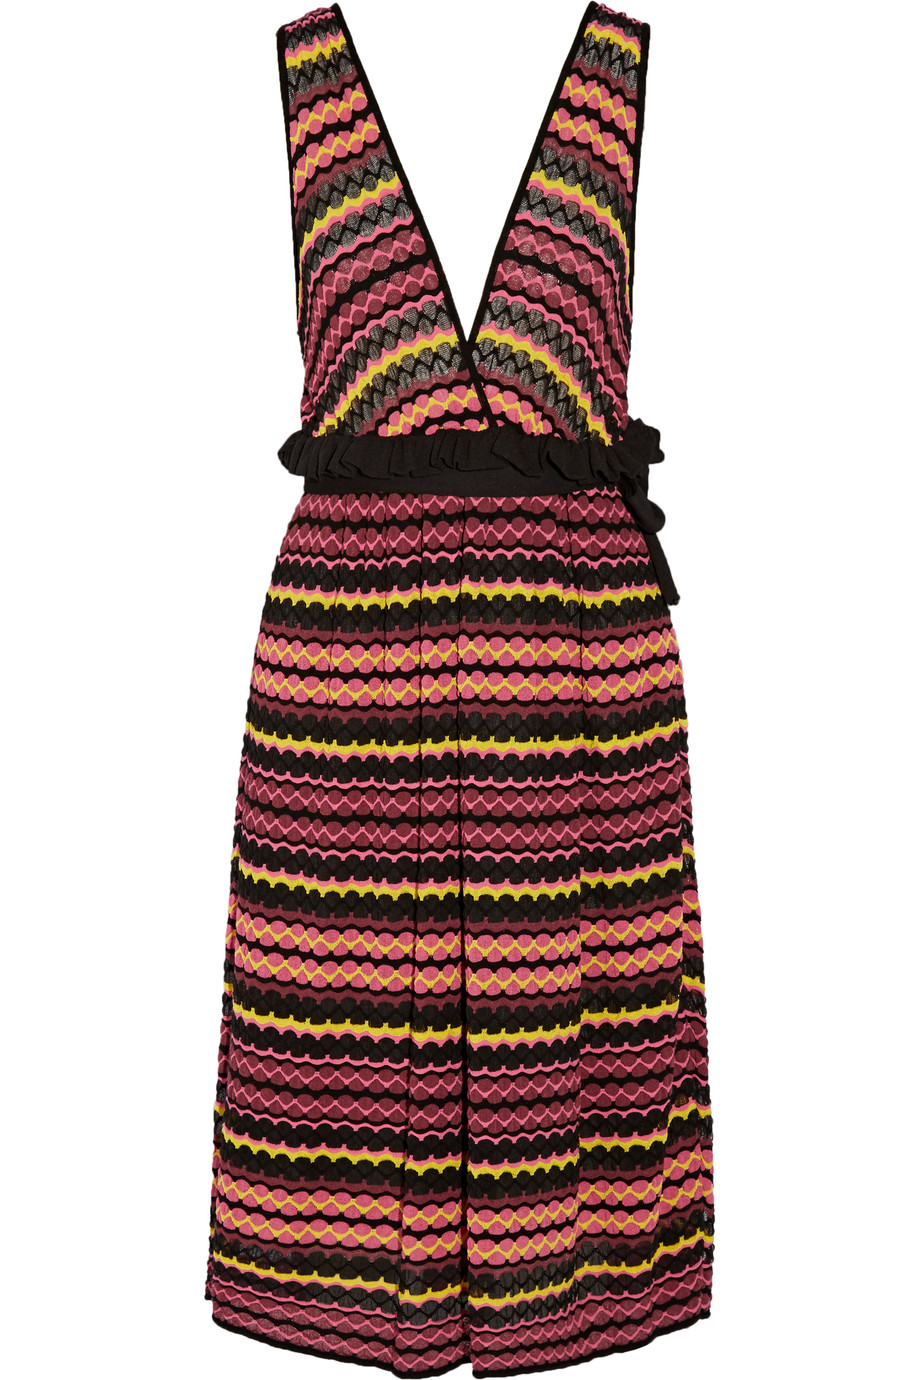 M Missoni Tie Waist Crochet Knit Dress